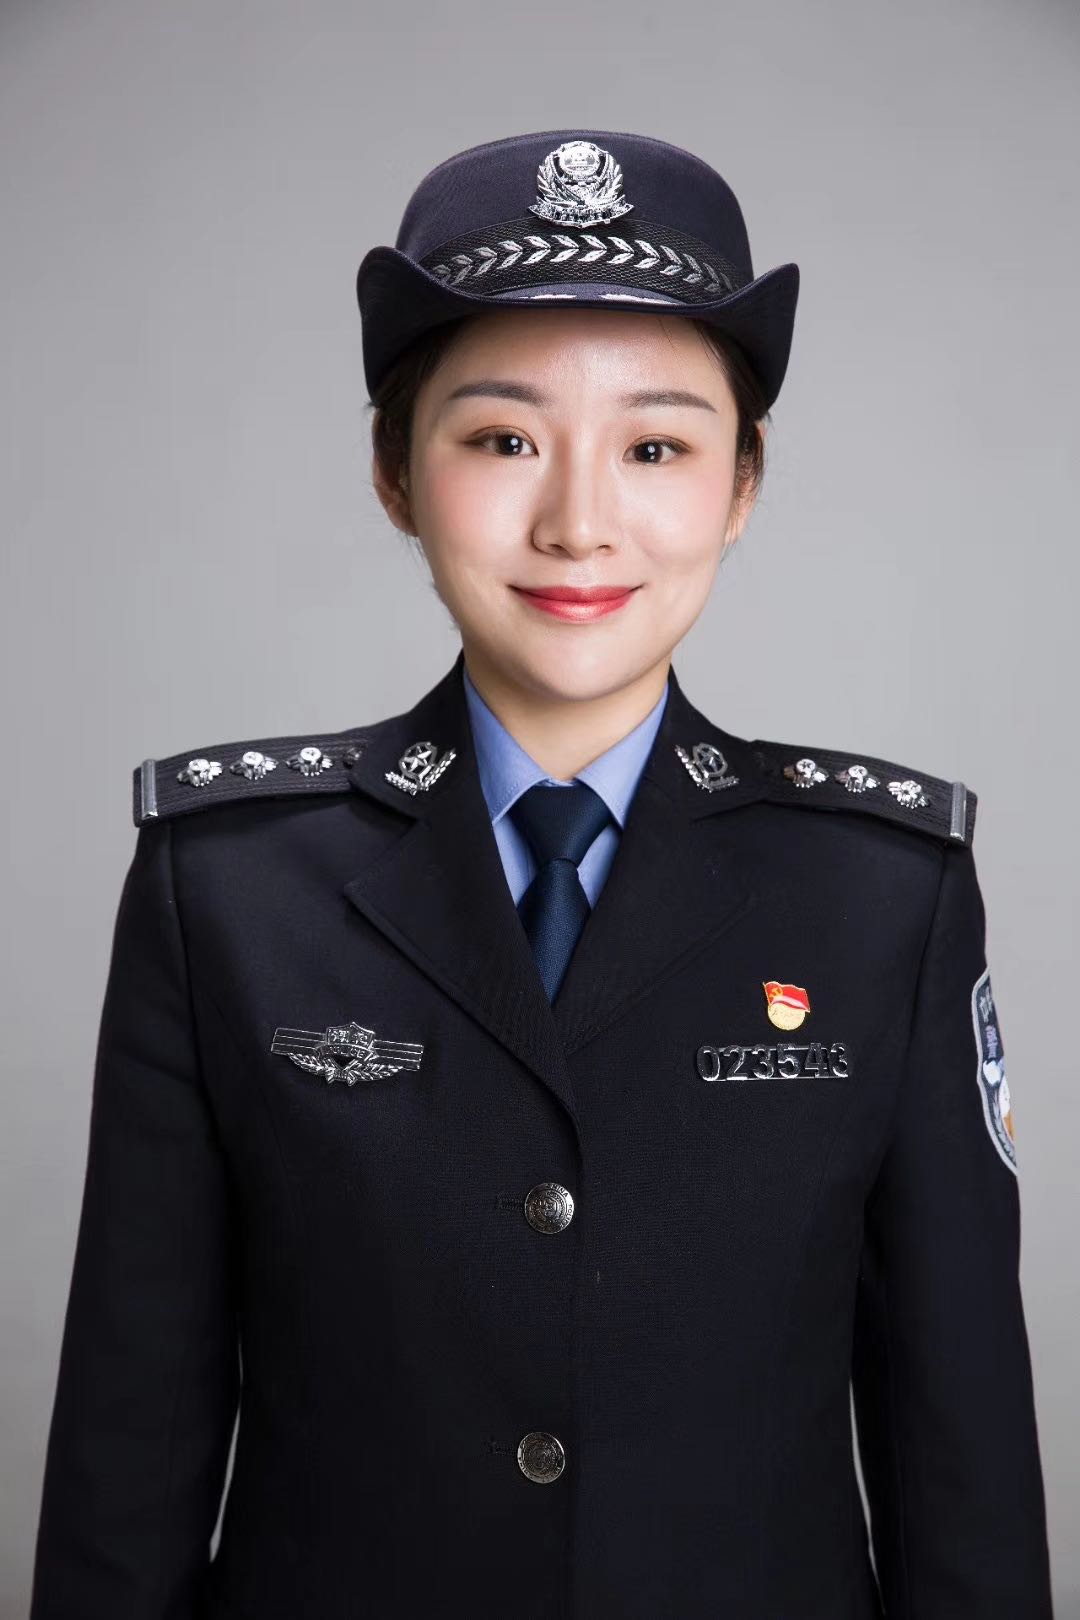 女警服 服装图片